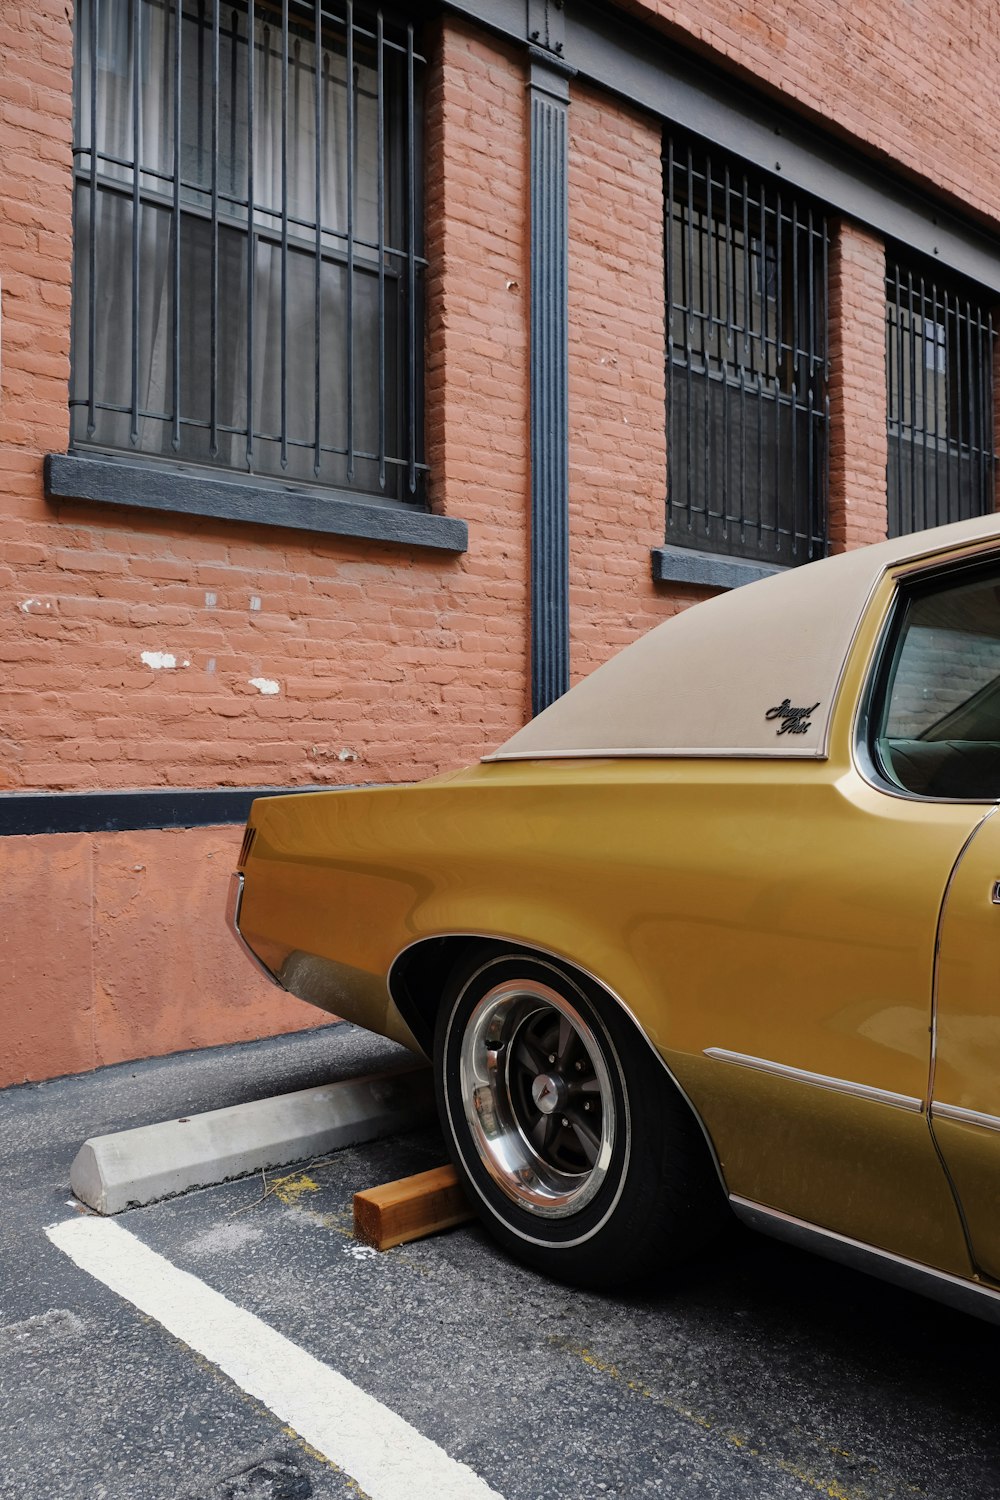 Coche amarillo aparcado junto a un edificio de ladrillos marrones